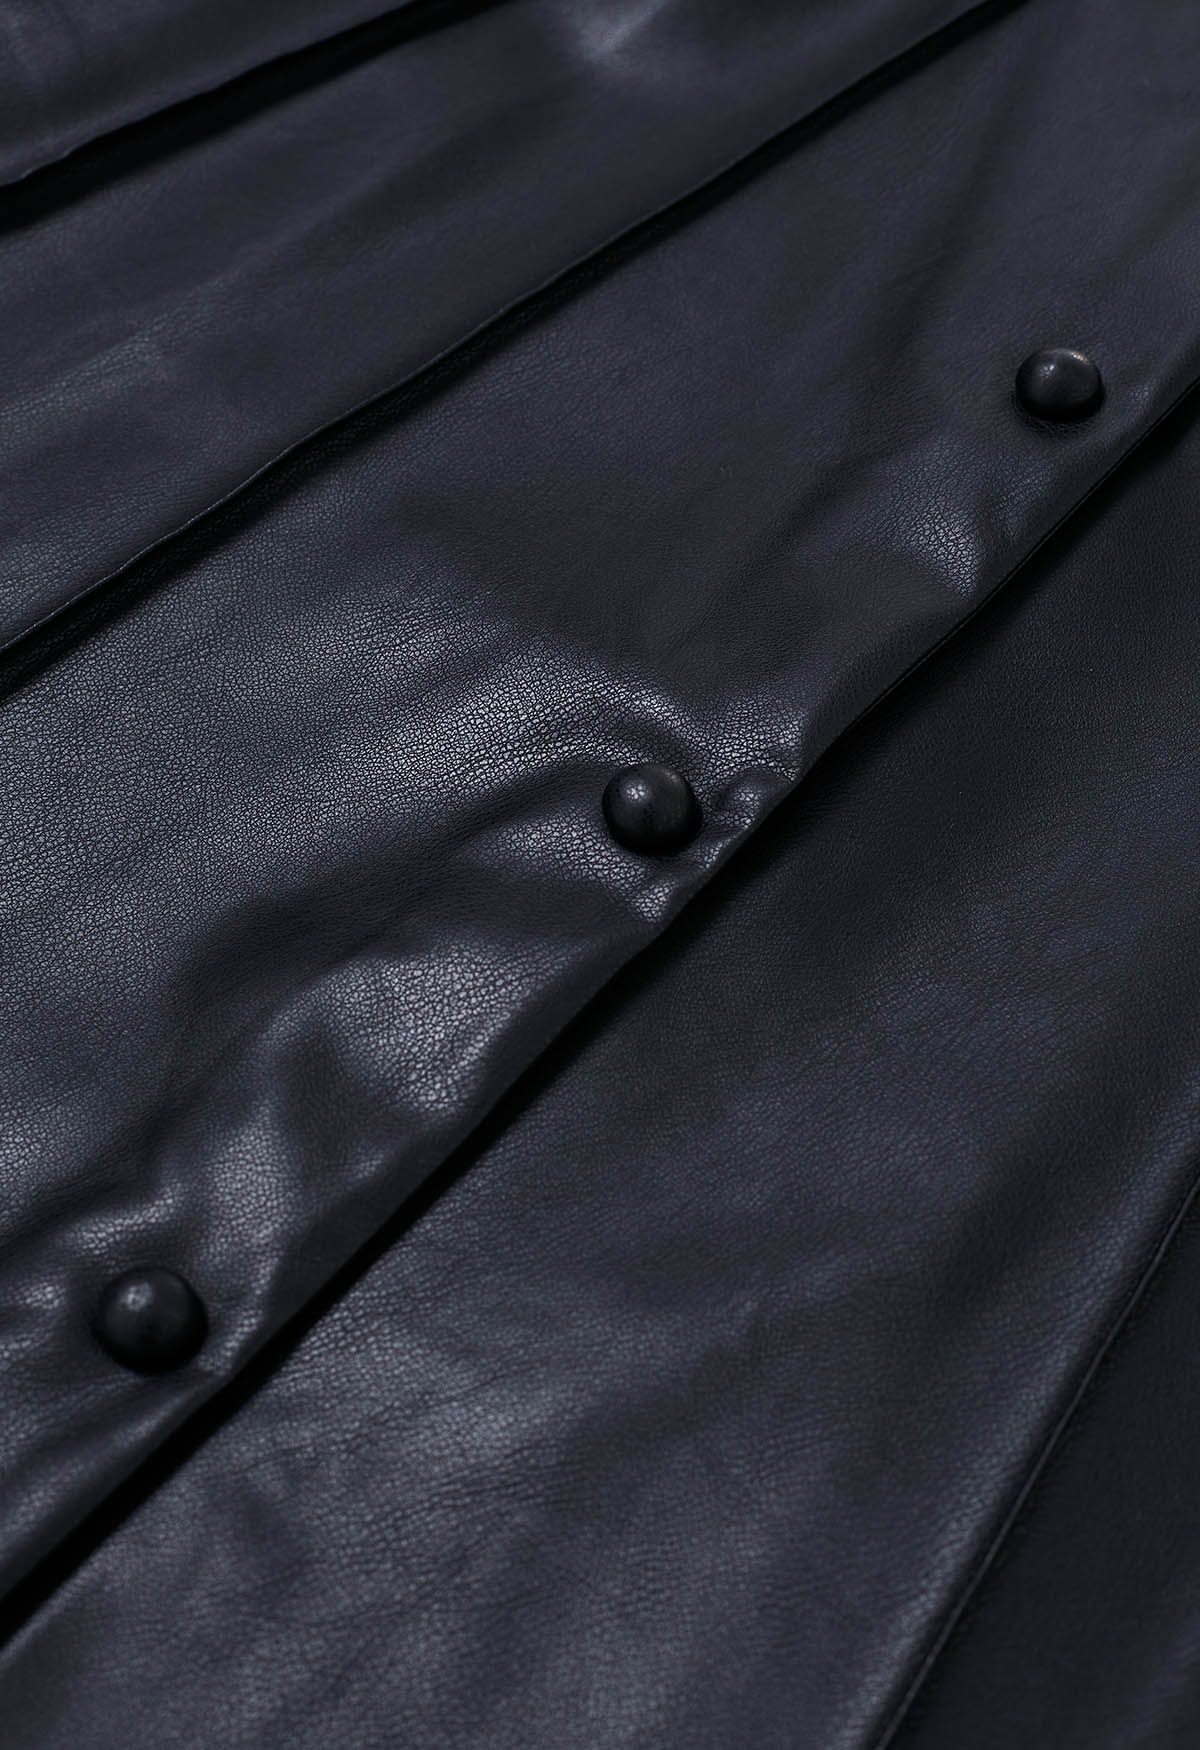 Falda midi de cuero sintético con botones en la parte delantera en negro